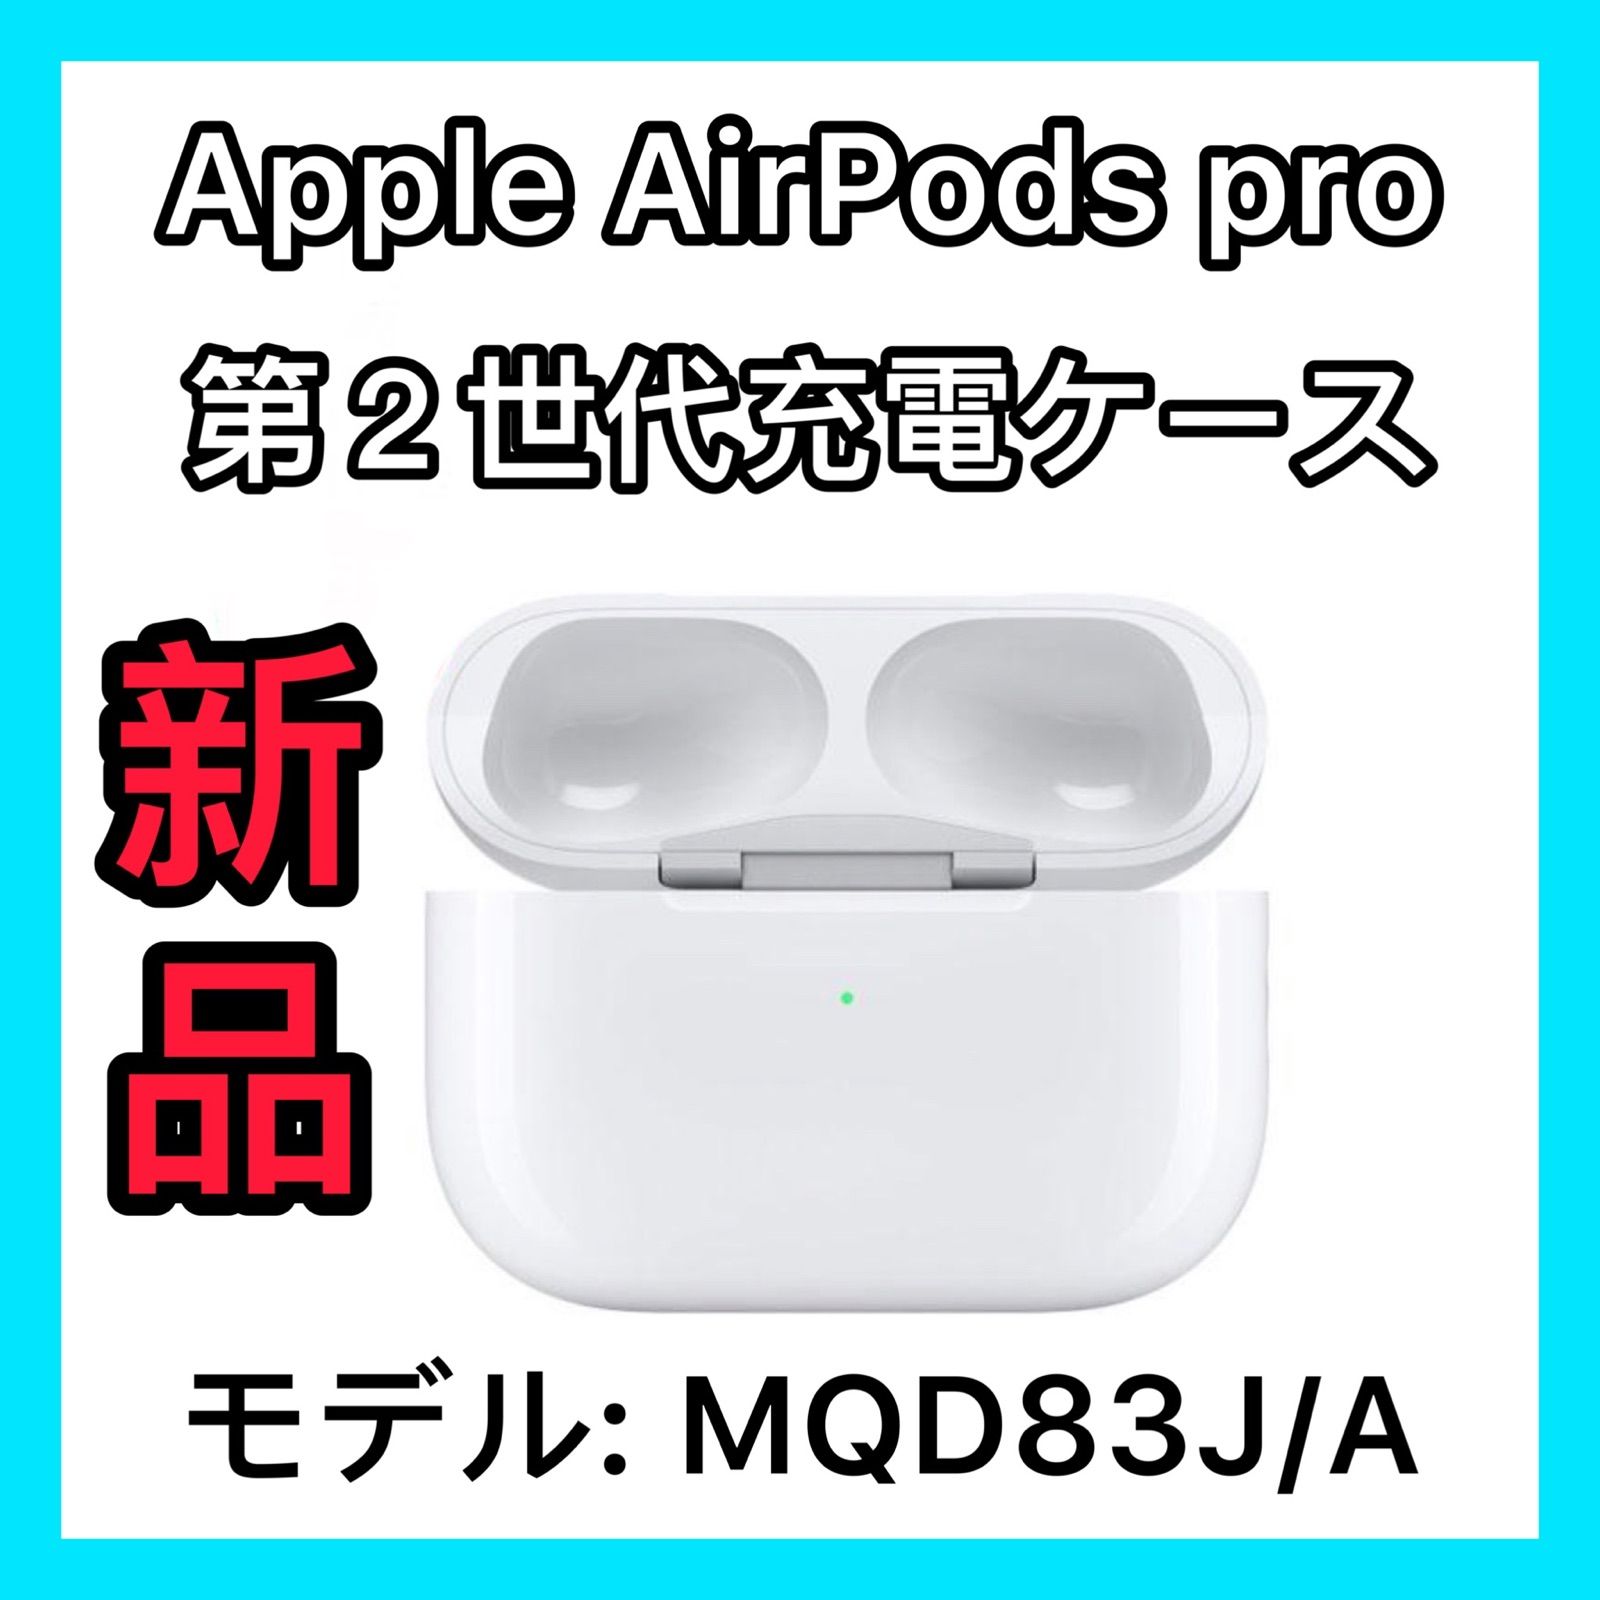 エアポッズエアーポッズプロ 充電ケースのみ AirPodsPro Apple